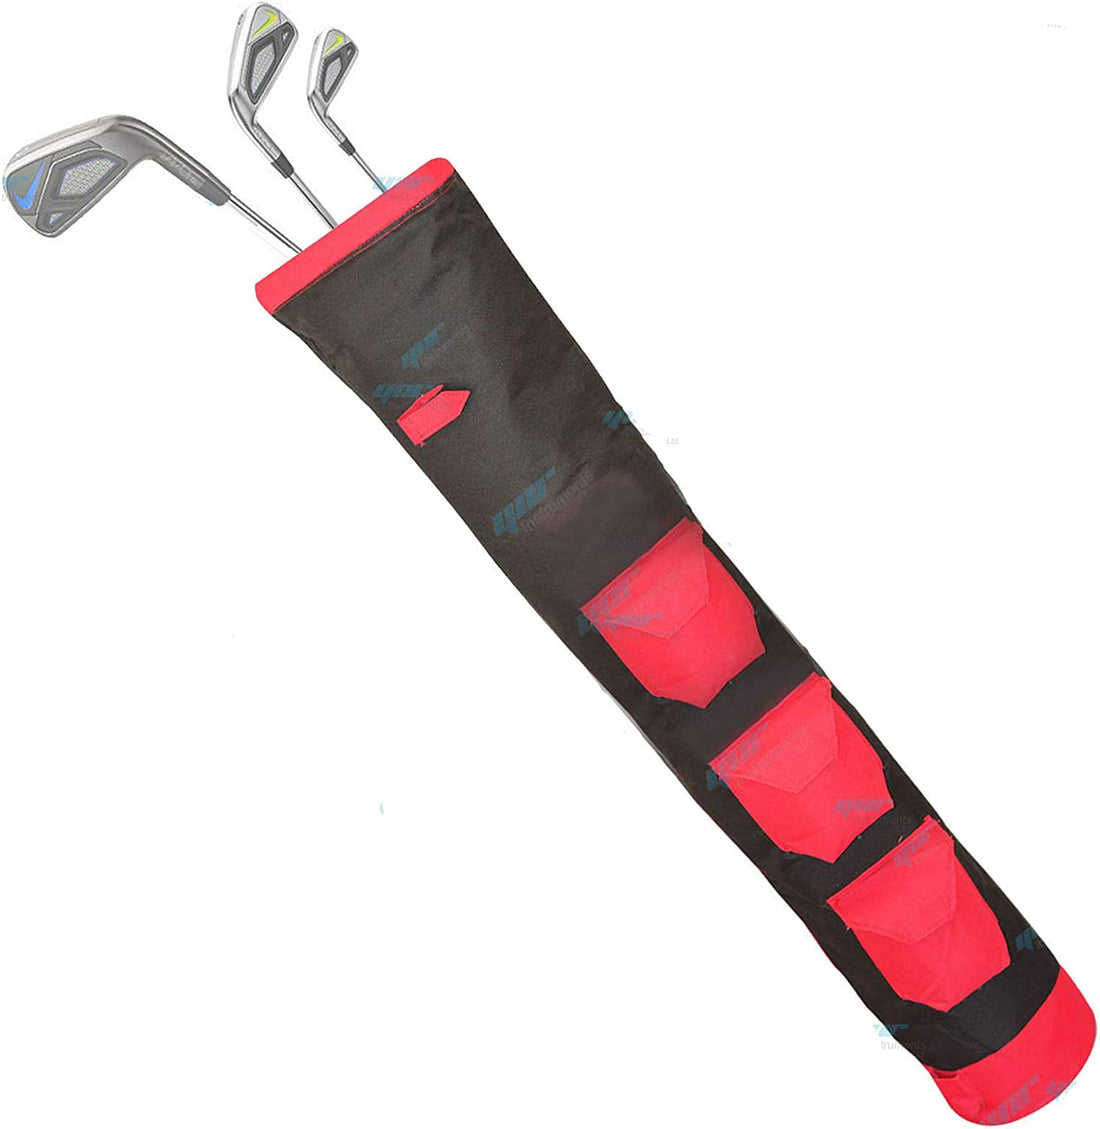 YNR Pencil Golf Club Bag | Three Pockets | 34-Inch Height | Lightweight Equipment